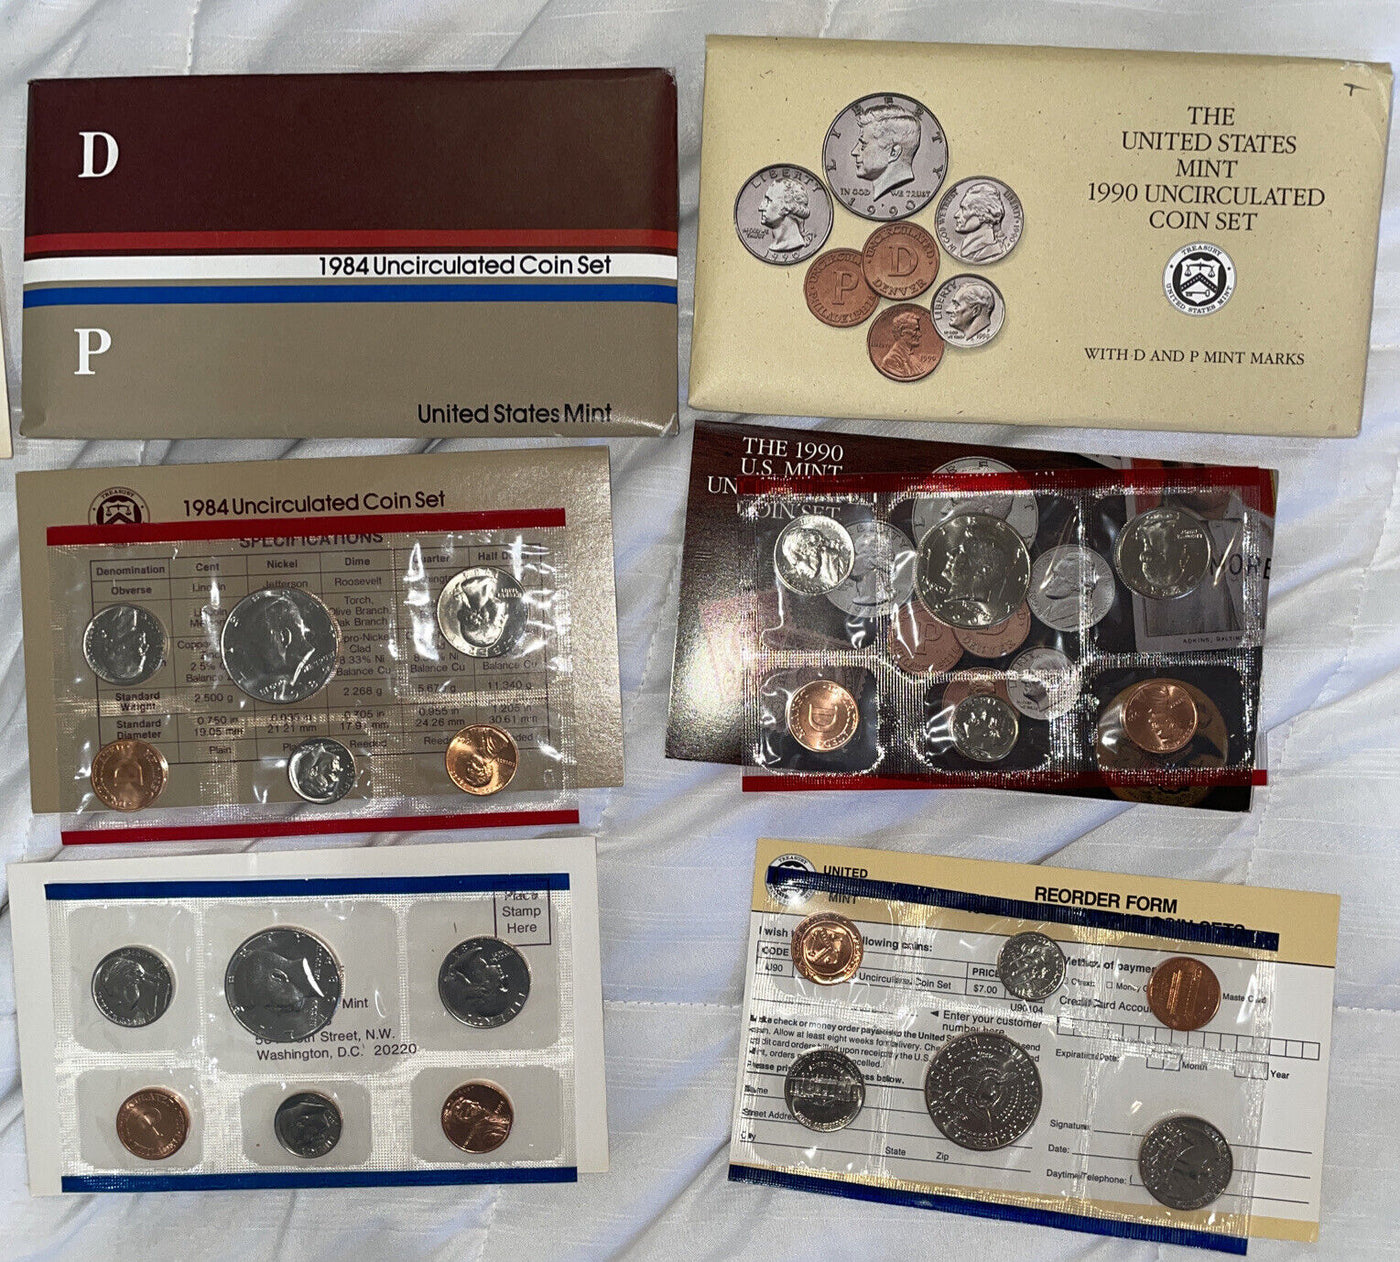 7 mint sets 1971 72 84 85 89 90 plus SBA set orig pkg over 80 coins grt bargain!